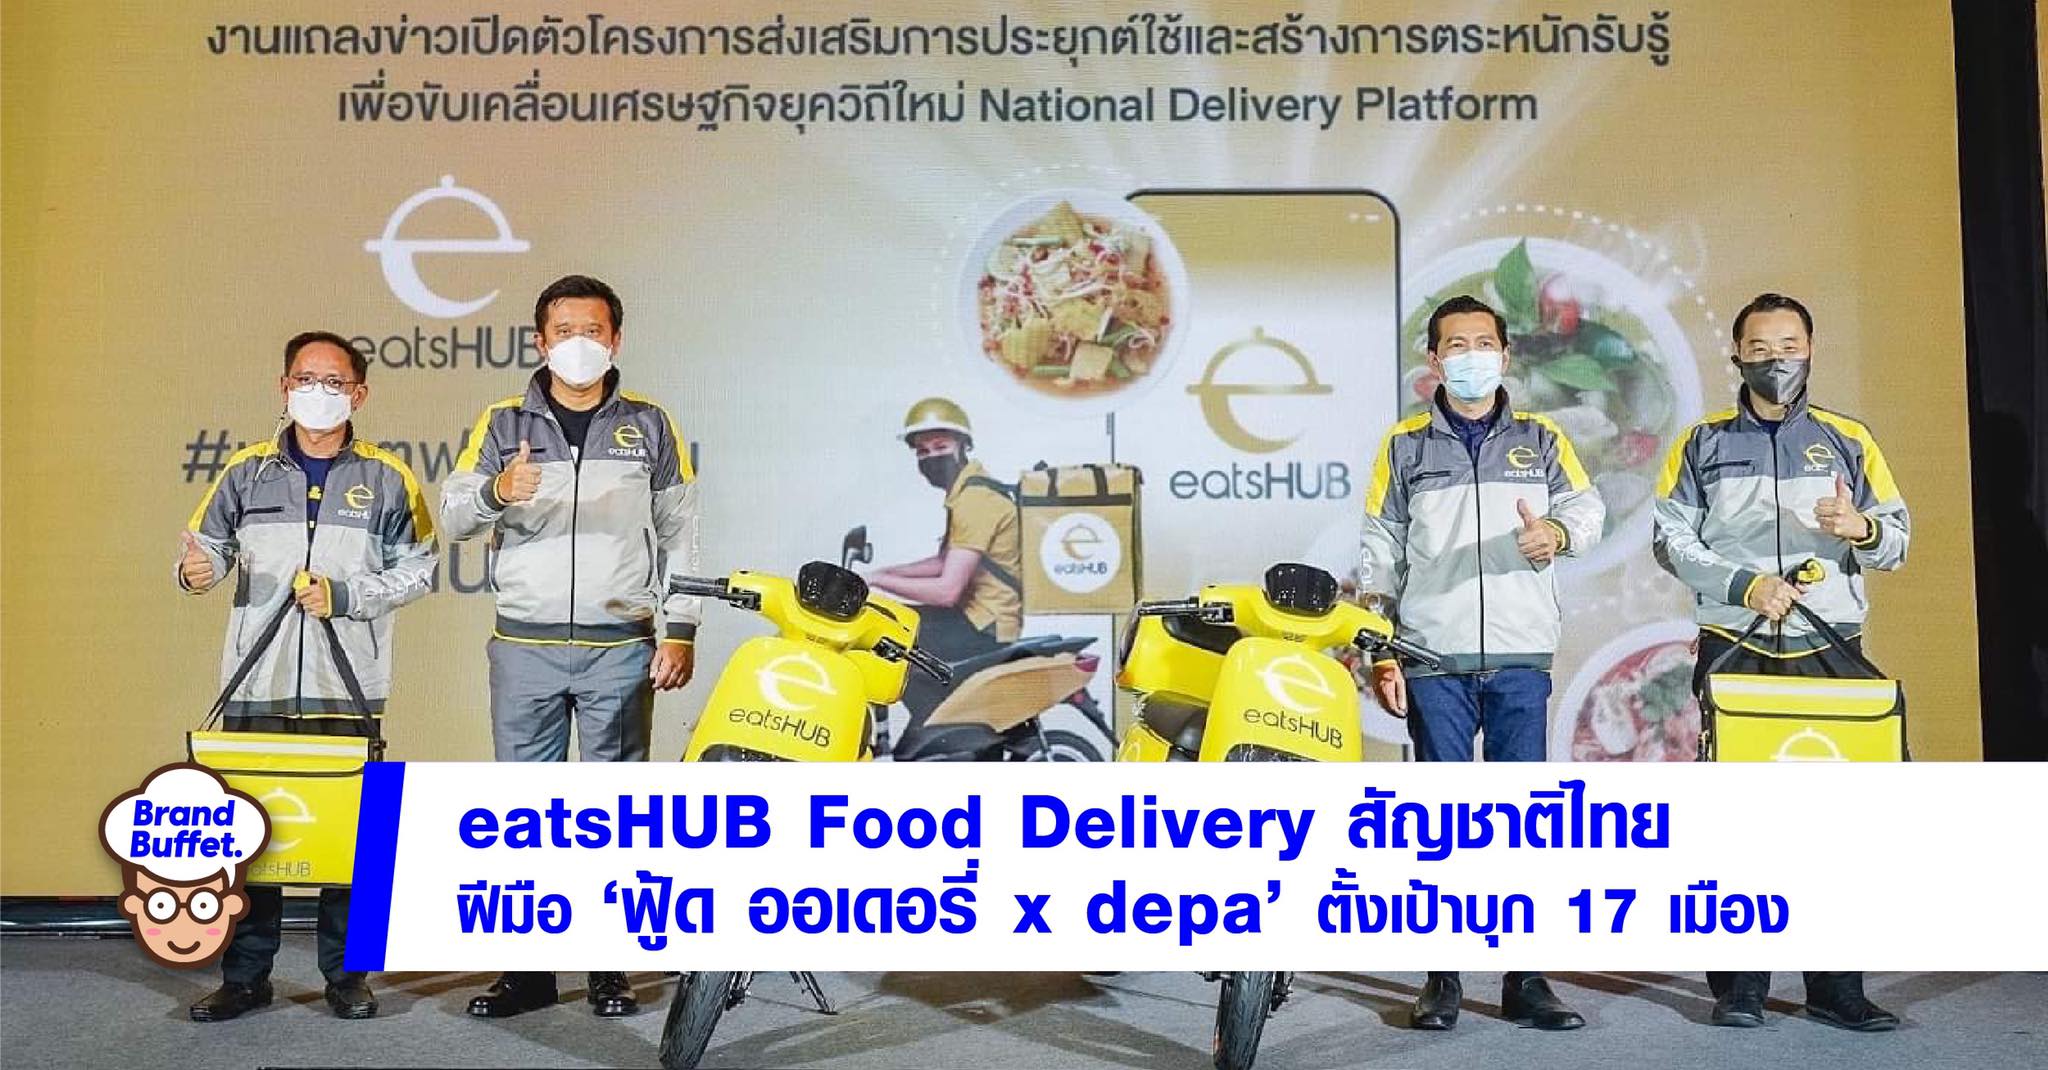 eatsHUB food delivery platform depa tv direct 01